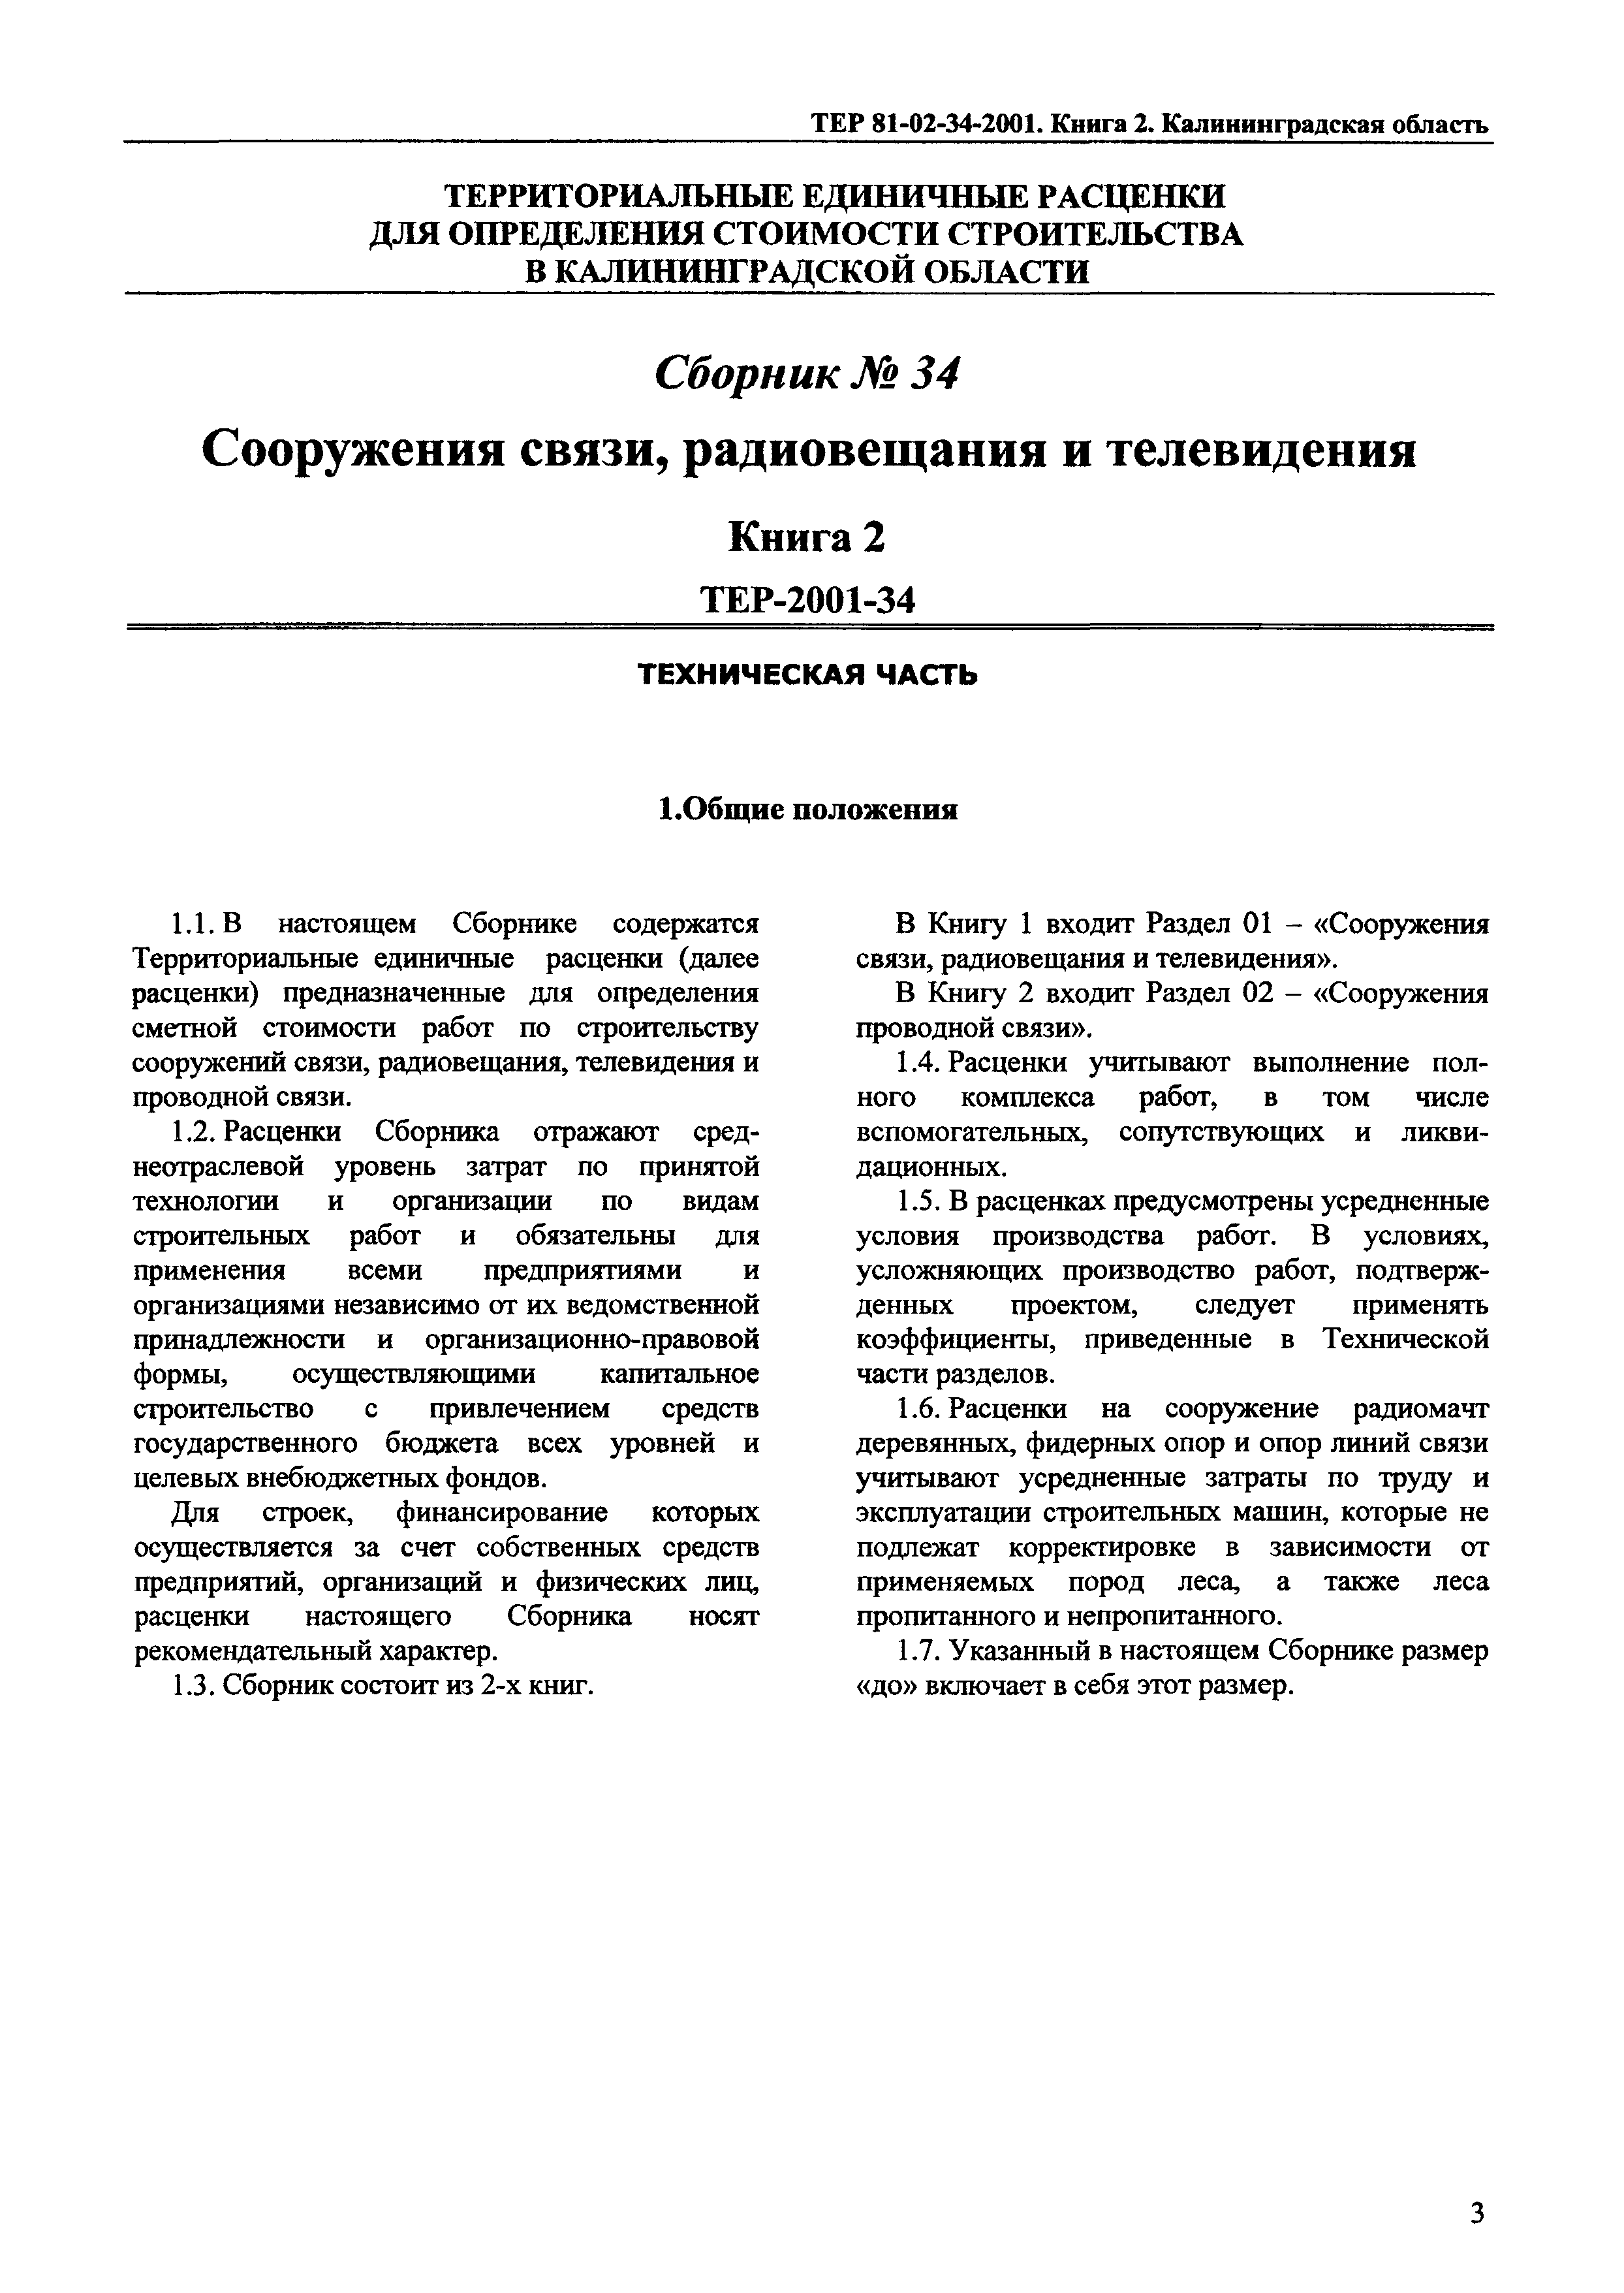 ТЕР Калининградской области 2001-34